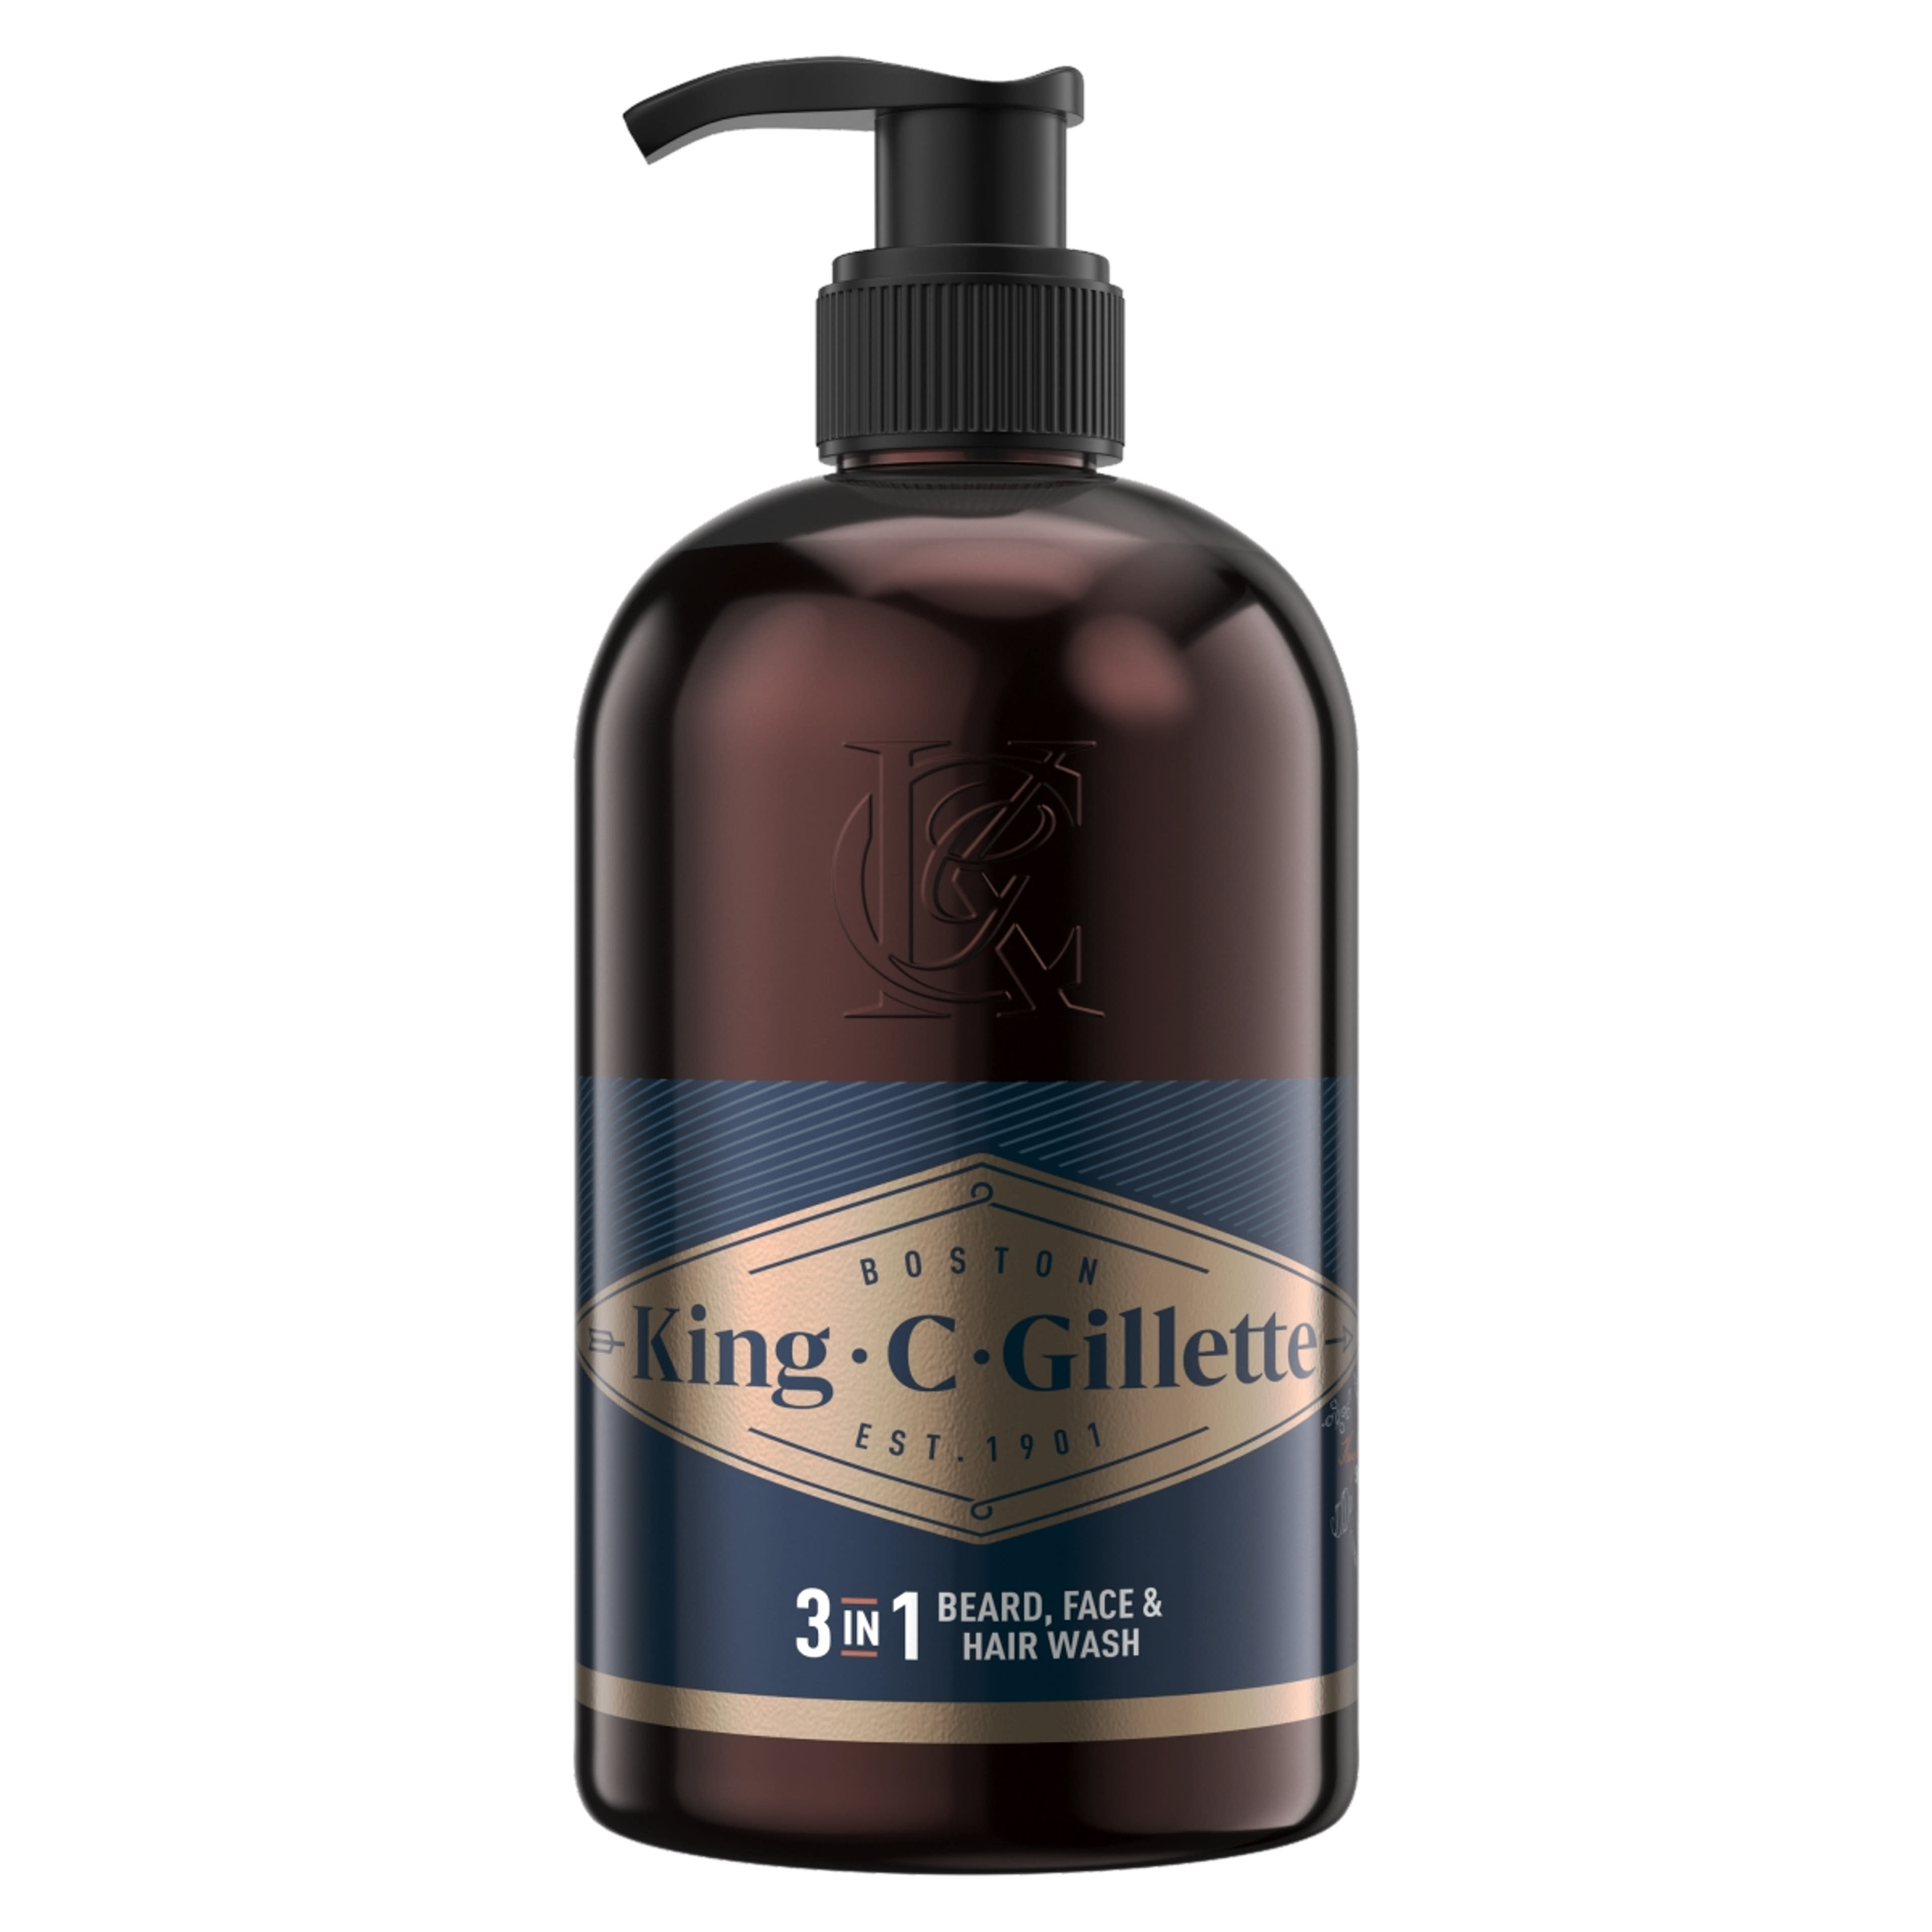 Gillette King C. szakáll&arcmosó - 350 ml